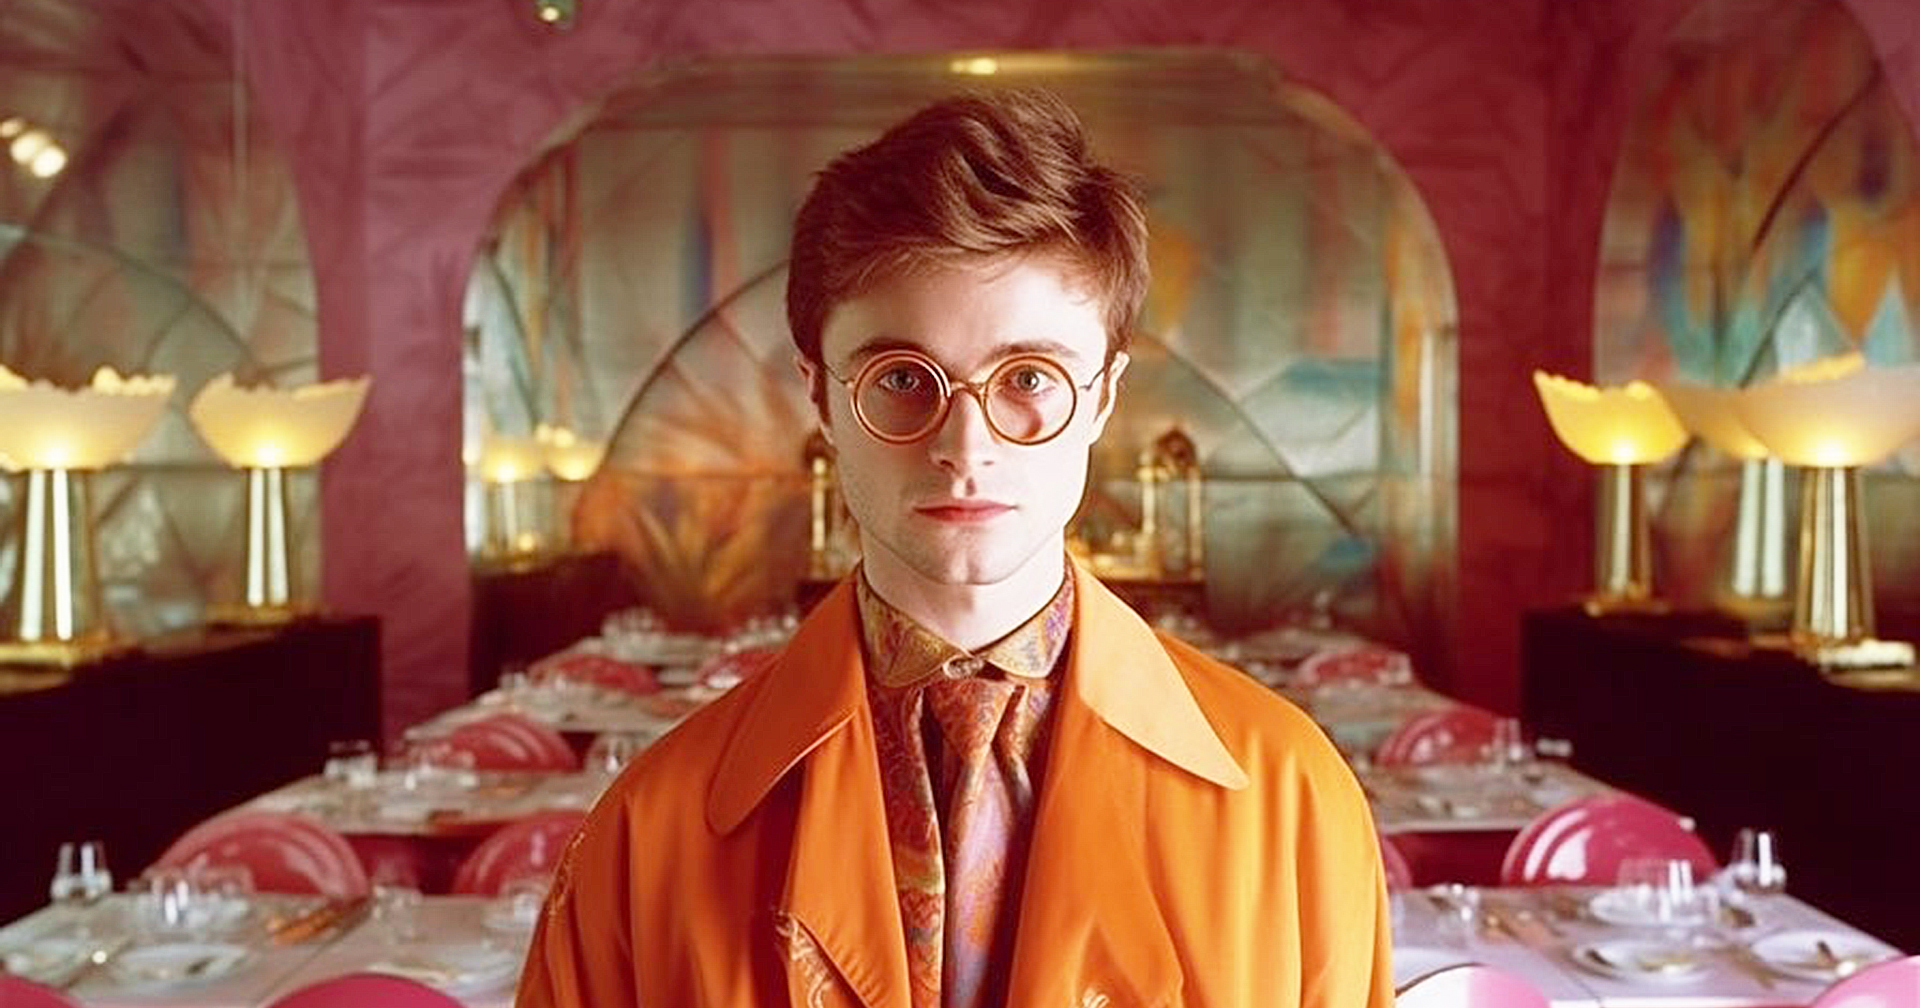 ชมภาพ ‘Harry Potter’ สีลูกกวาดในสไตล์ Wes Anderson จากฝีมือการสร้างโดย AI